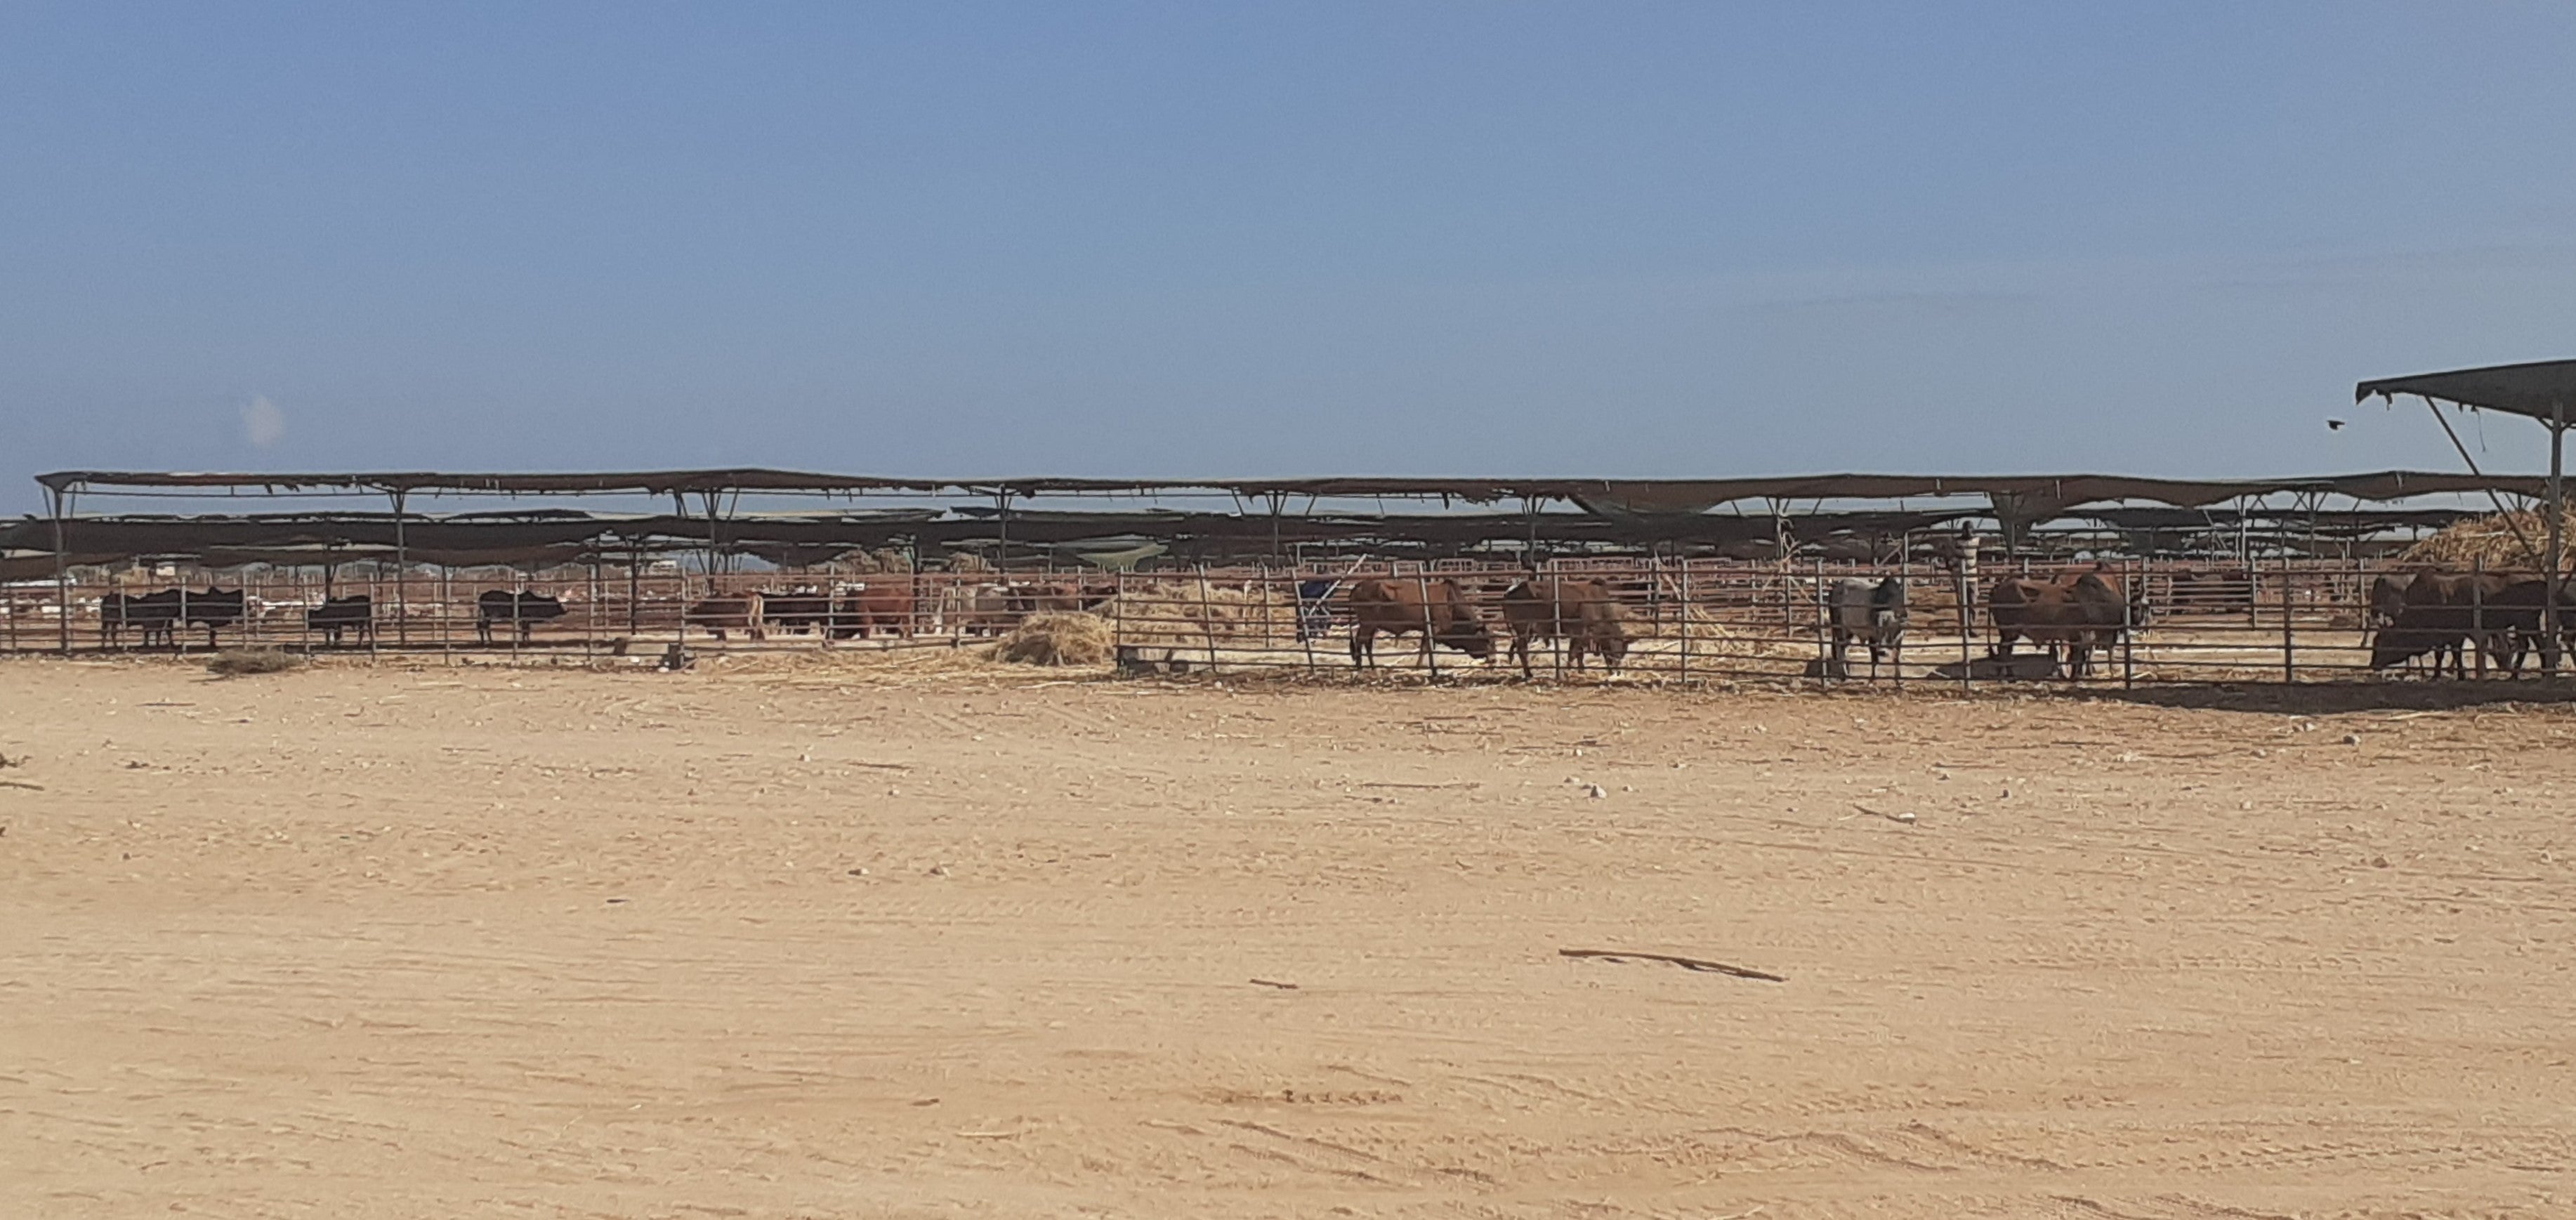 Livestock in Somalia